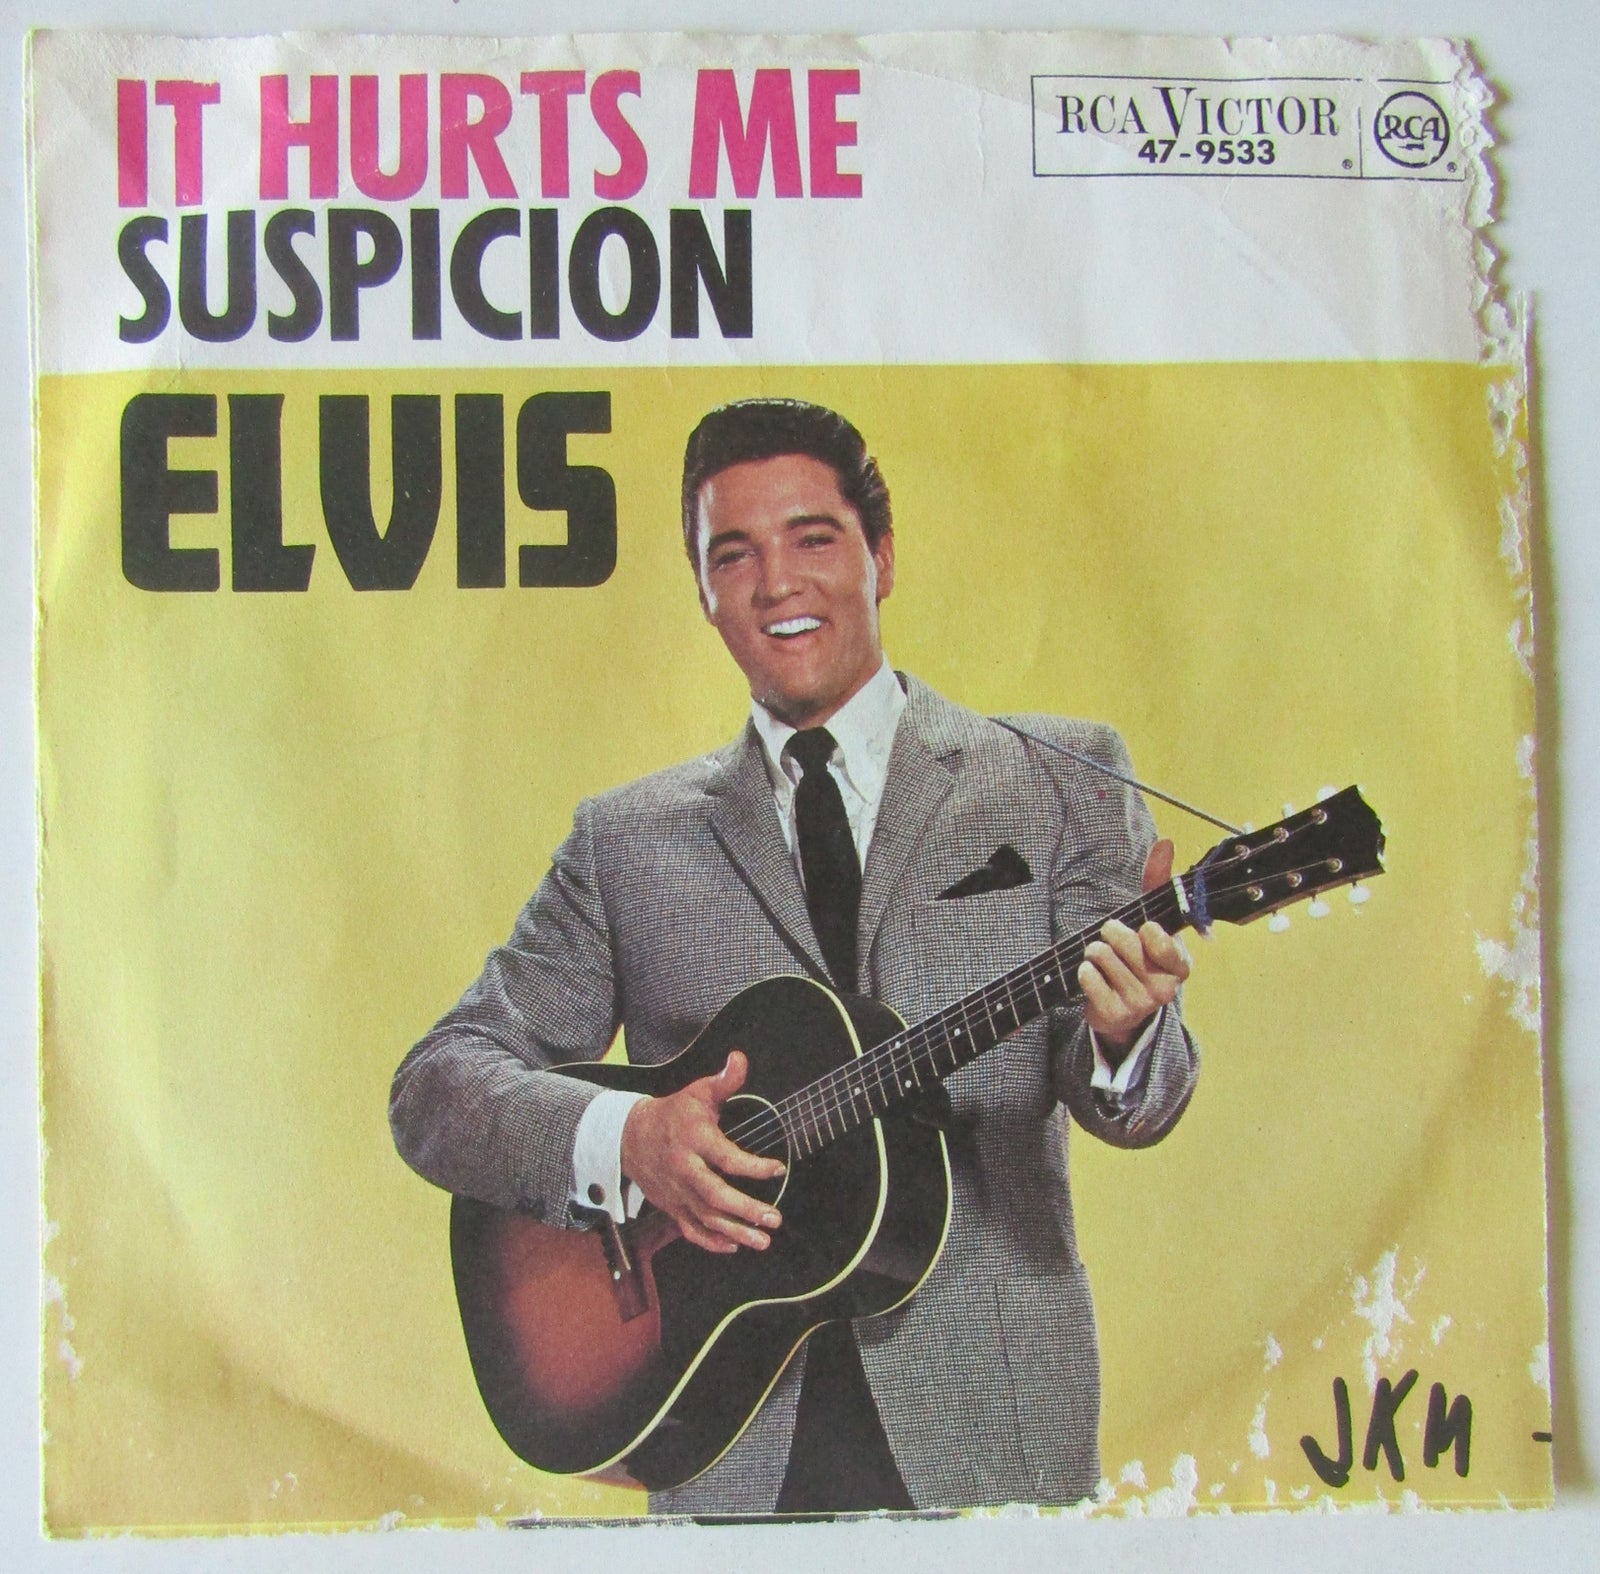 Single, Elvis Presley, It Hurts Me / Suspicion